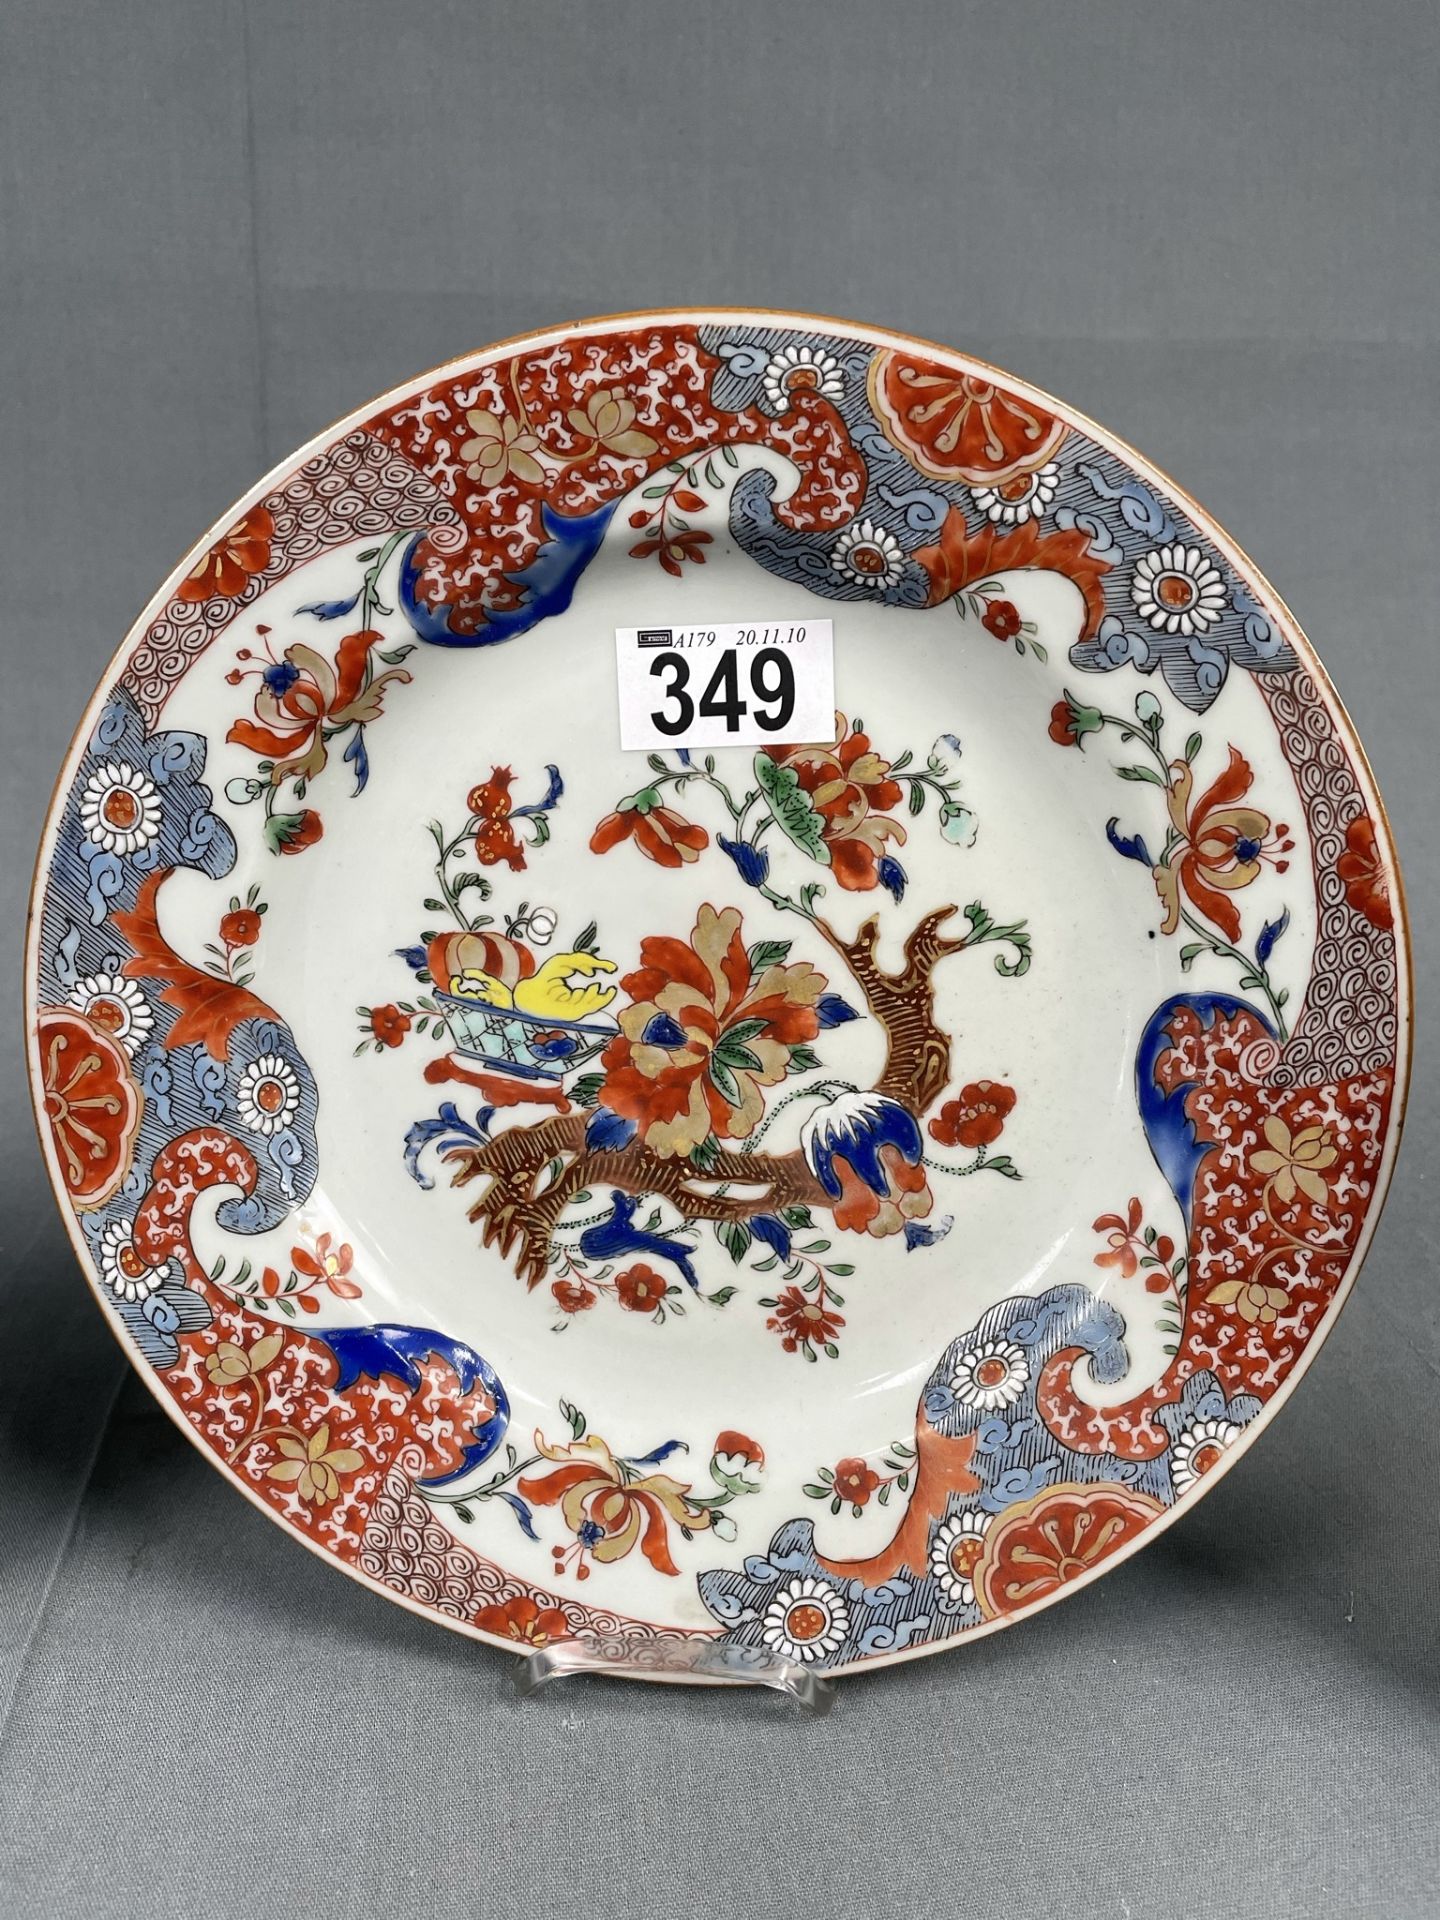 3 Teller und eine Schale. Wohl China antik 18. / 19. Jahrhundert? - Image 4 of 10